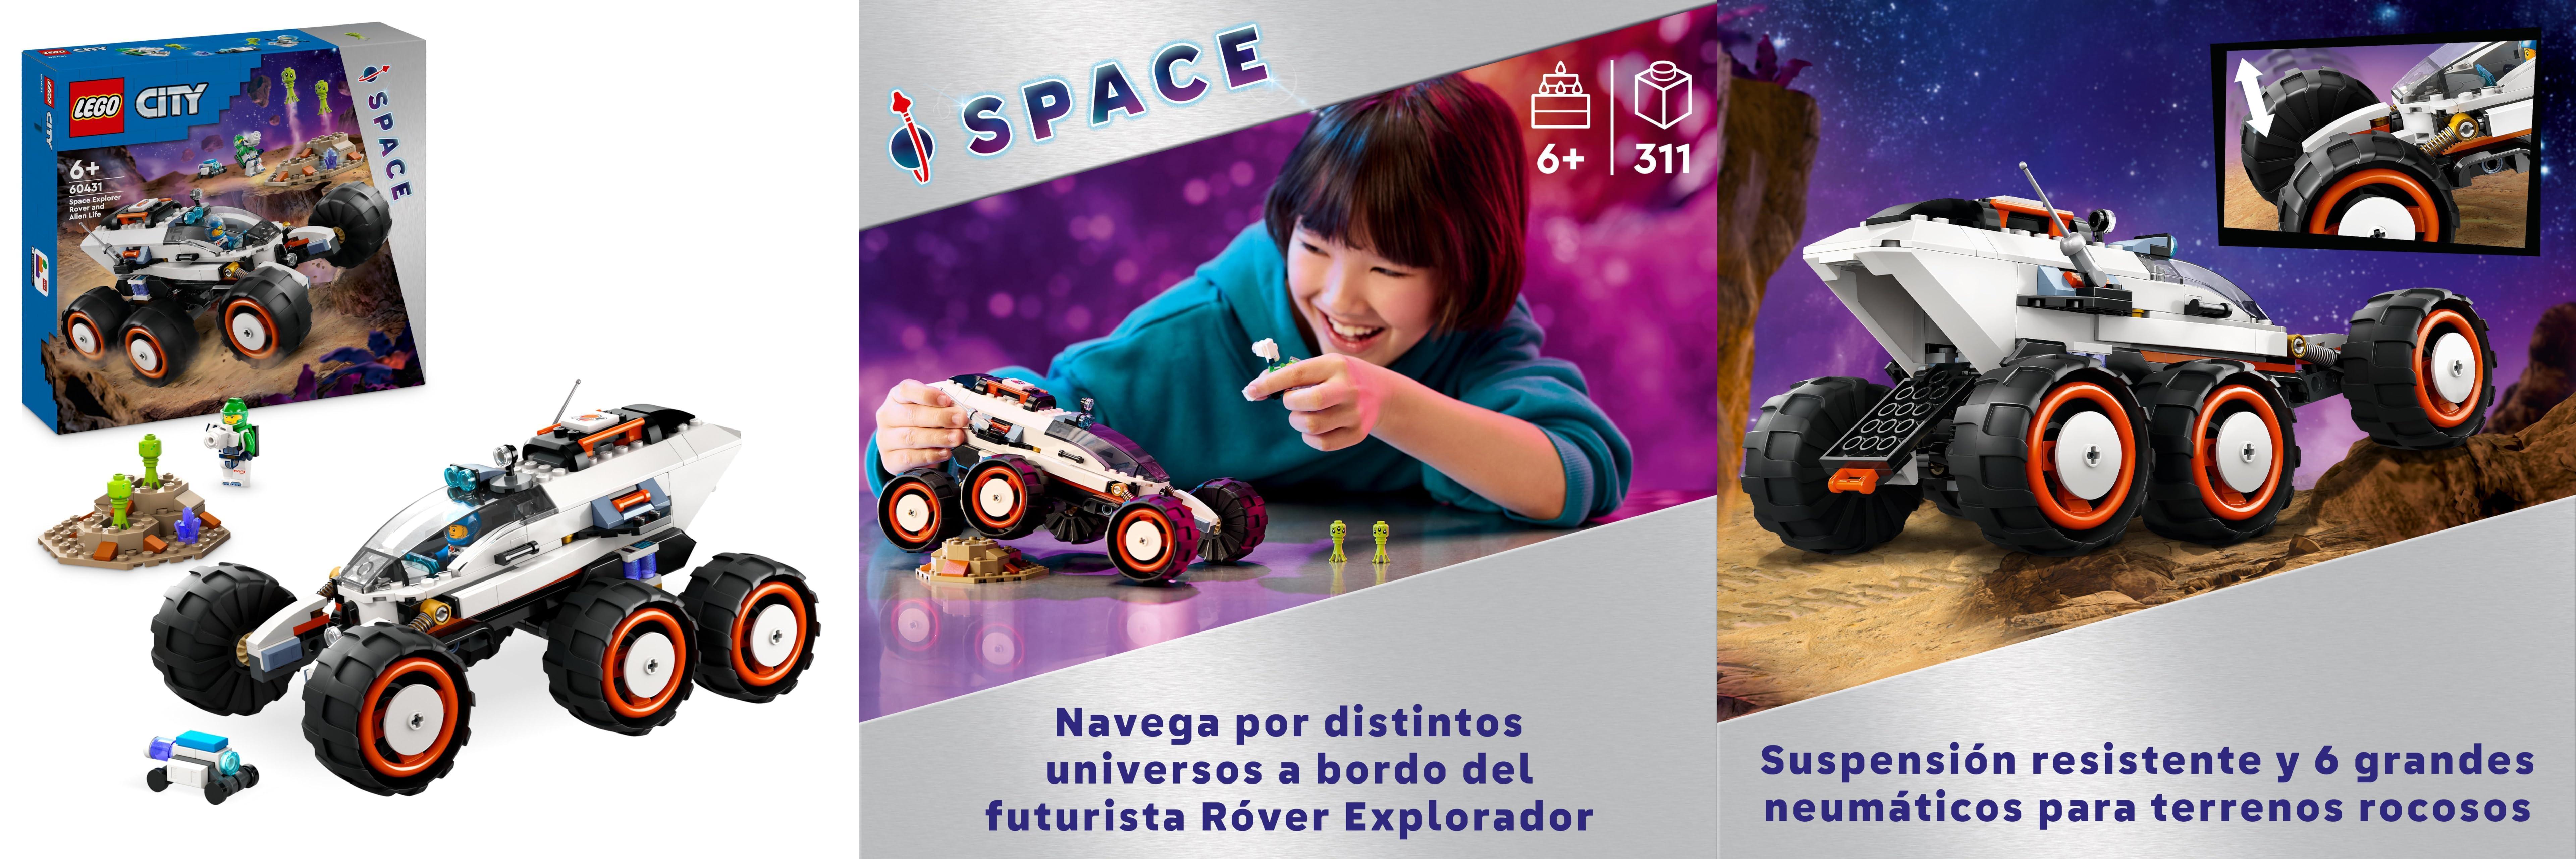 Descubre el Universo con LEGO City Róver Explorador Espacial: ¡Un Regalo de Cumpleaños Increíble para Niños y Niñas!